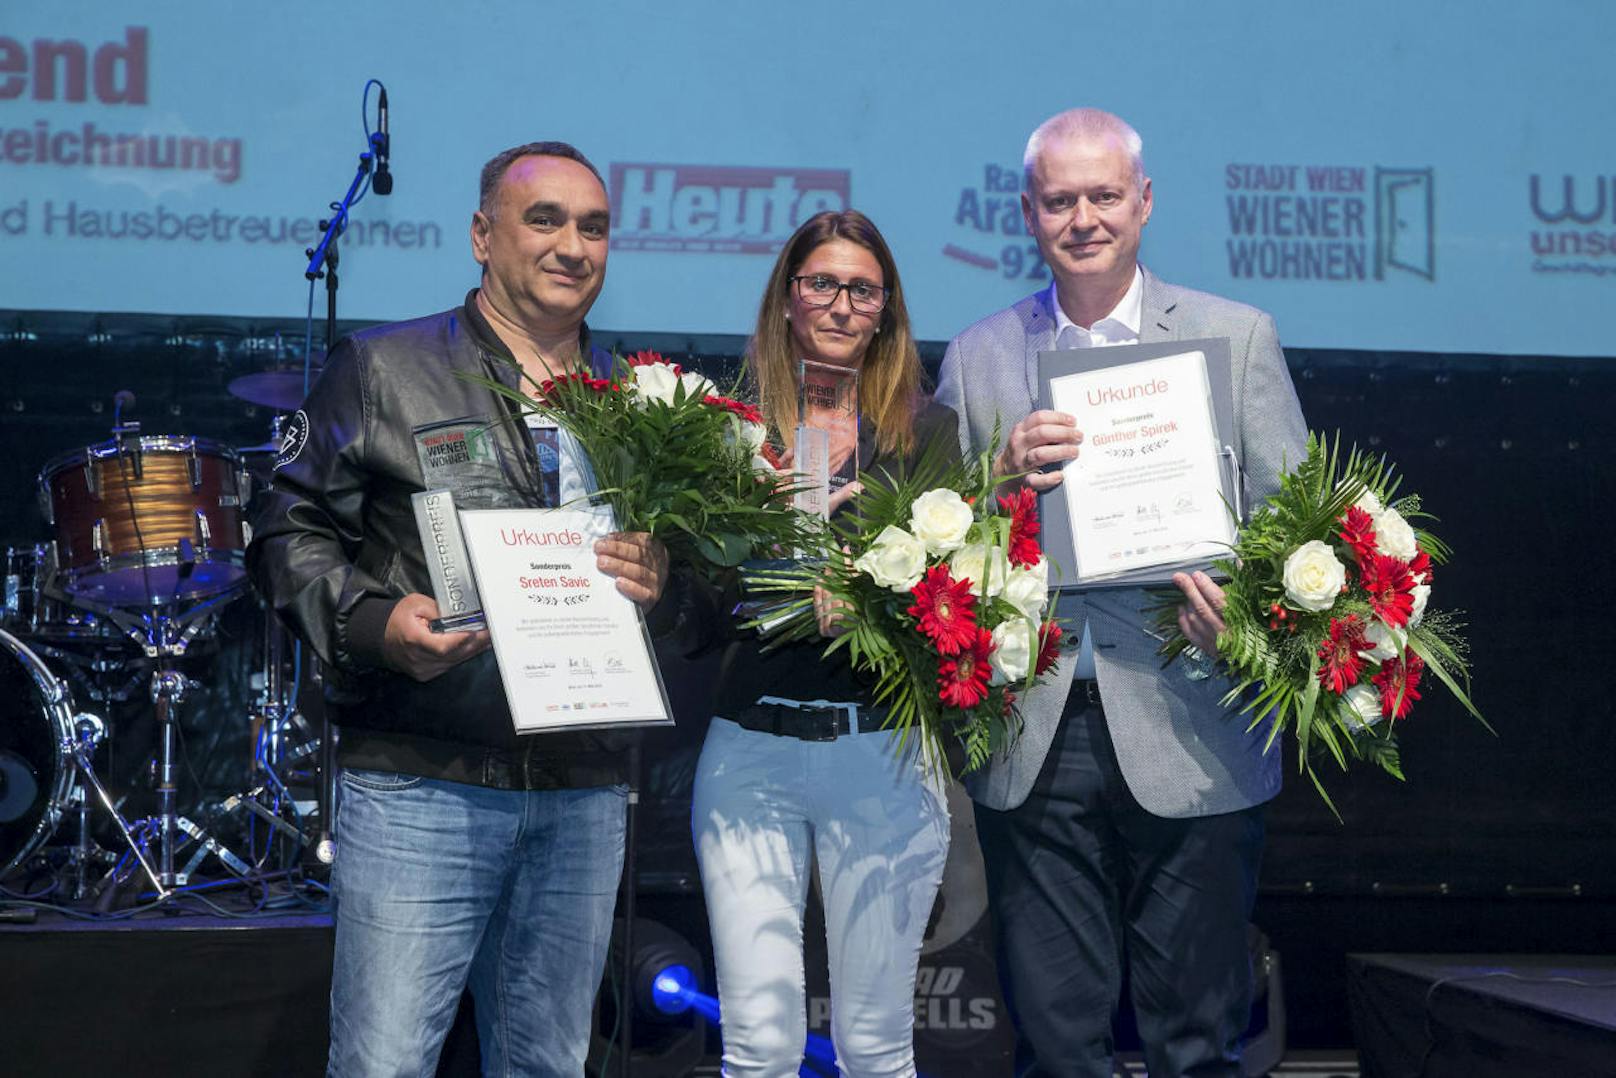 Die Sonderpreise gingen an (v. li.): Sreten Savic, Werner Brandl (seine Tochter Romana Berti kam in Vertretung) und Günther Spirek.